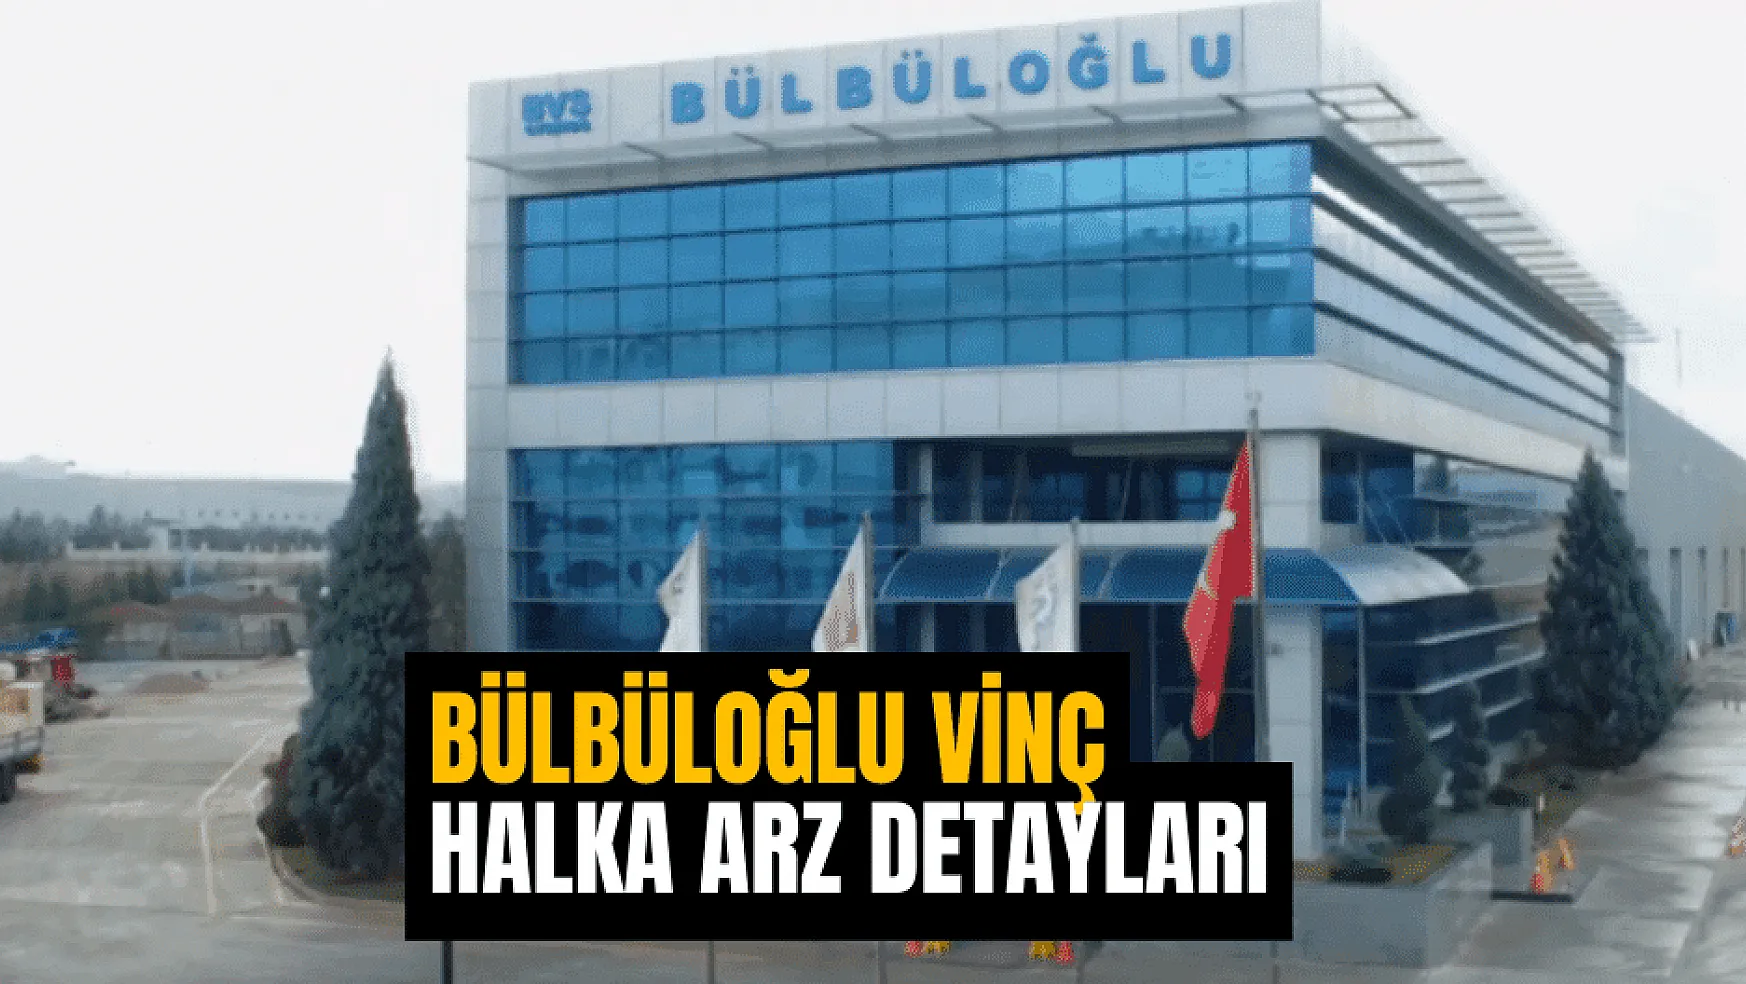 Bülbüloğlu Vinç halka arz hazırlıklarına devam ediyor